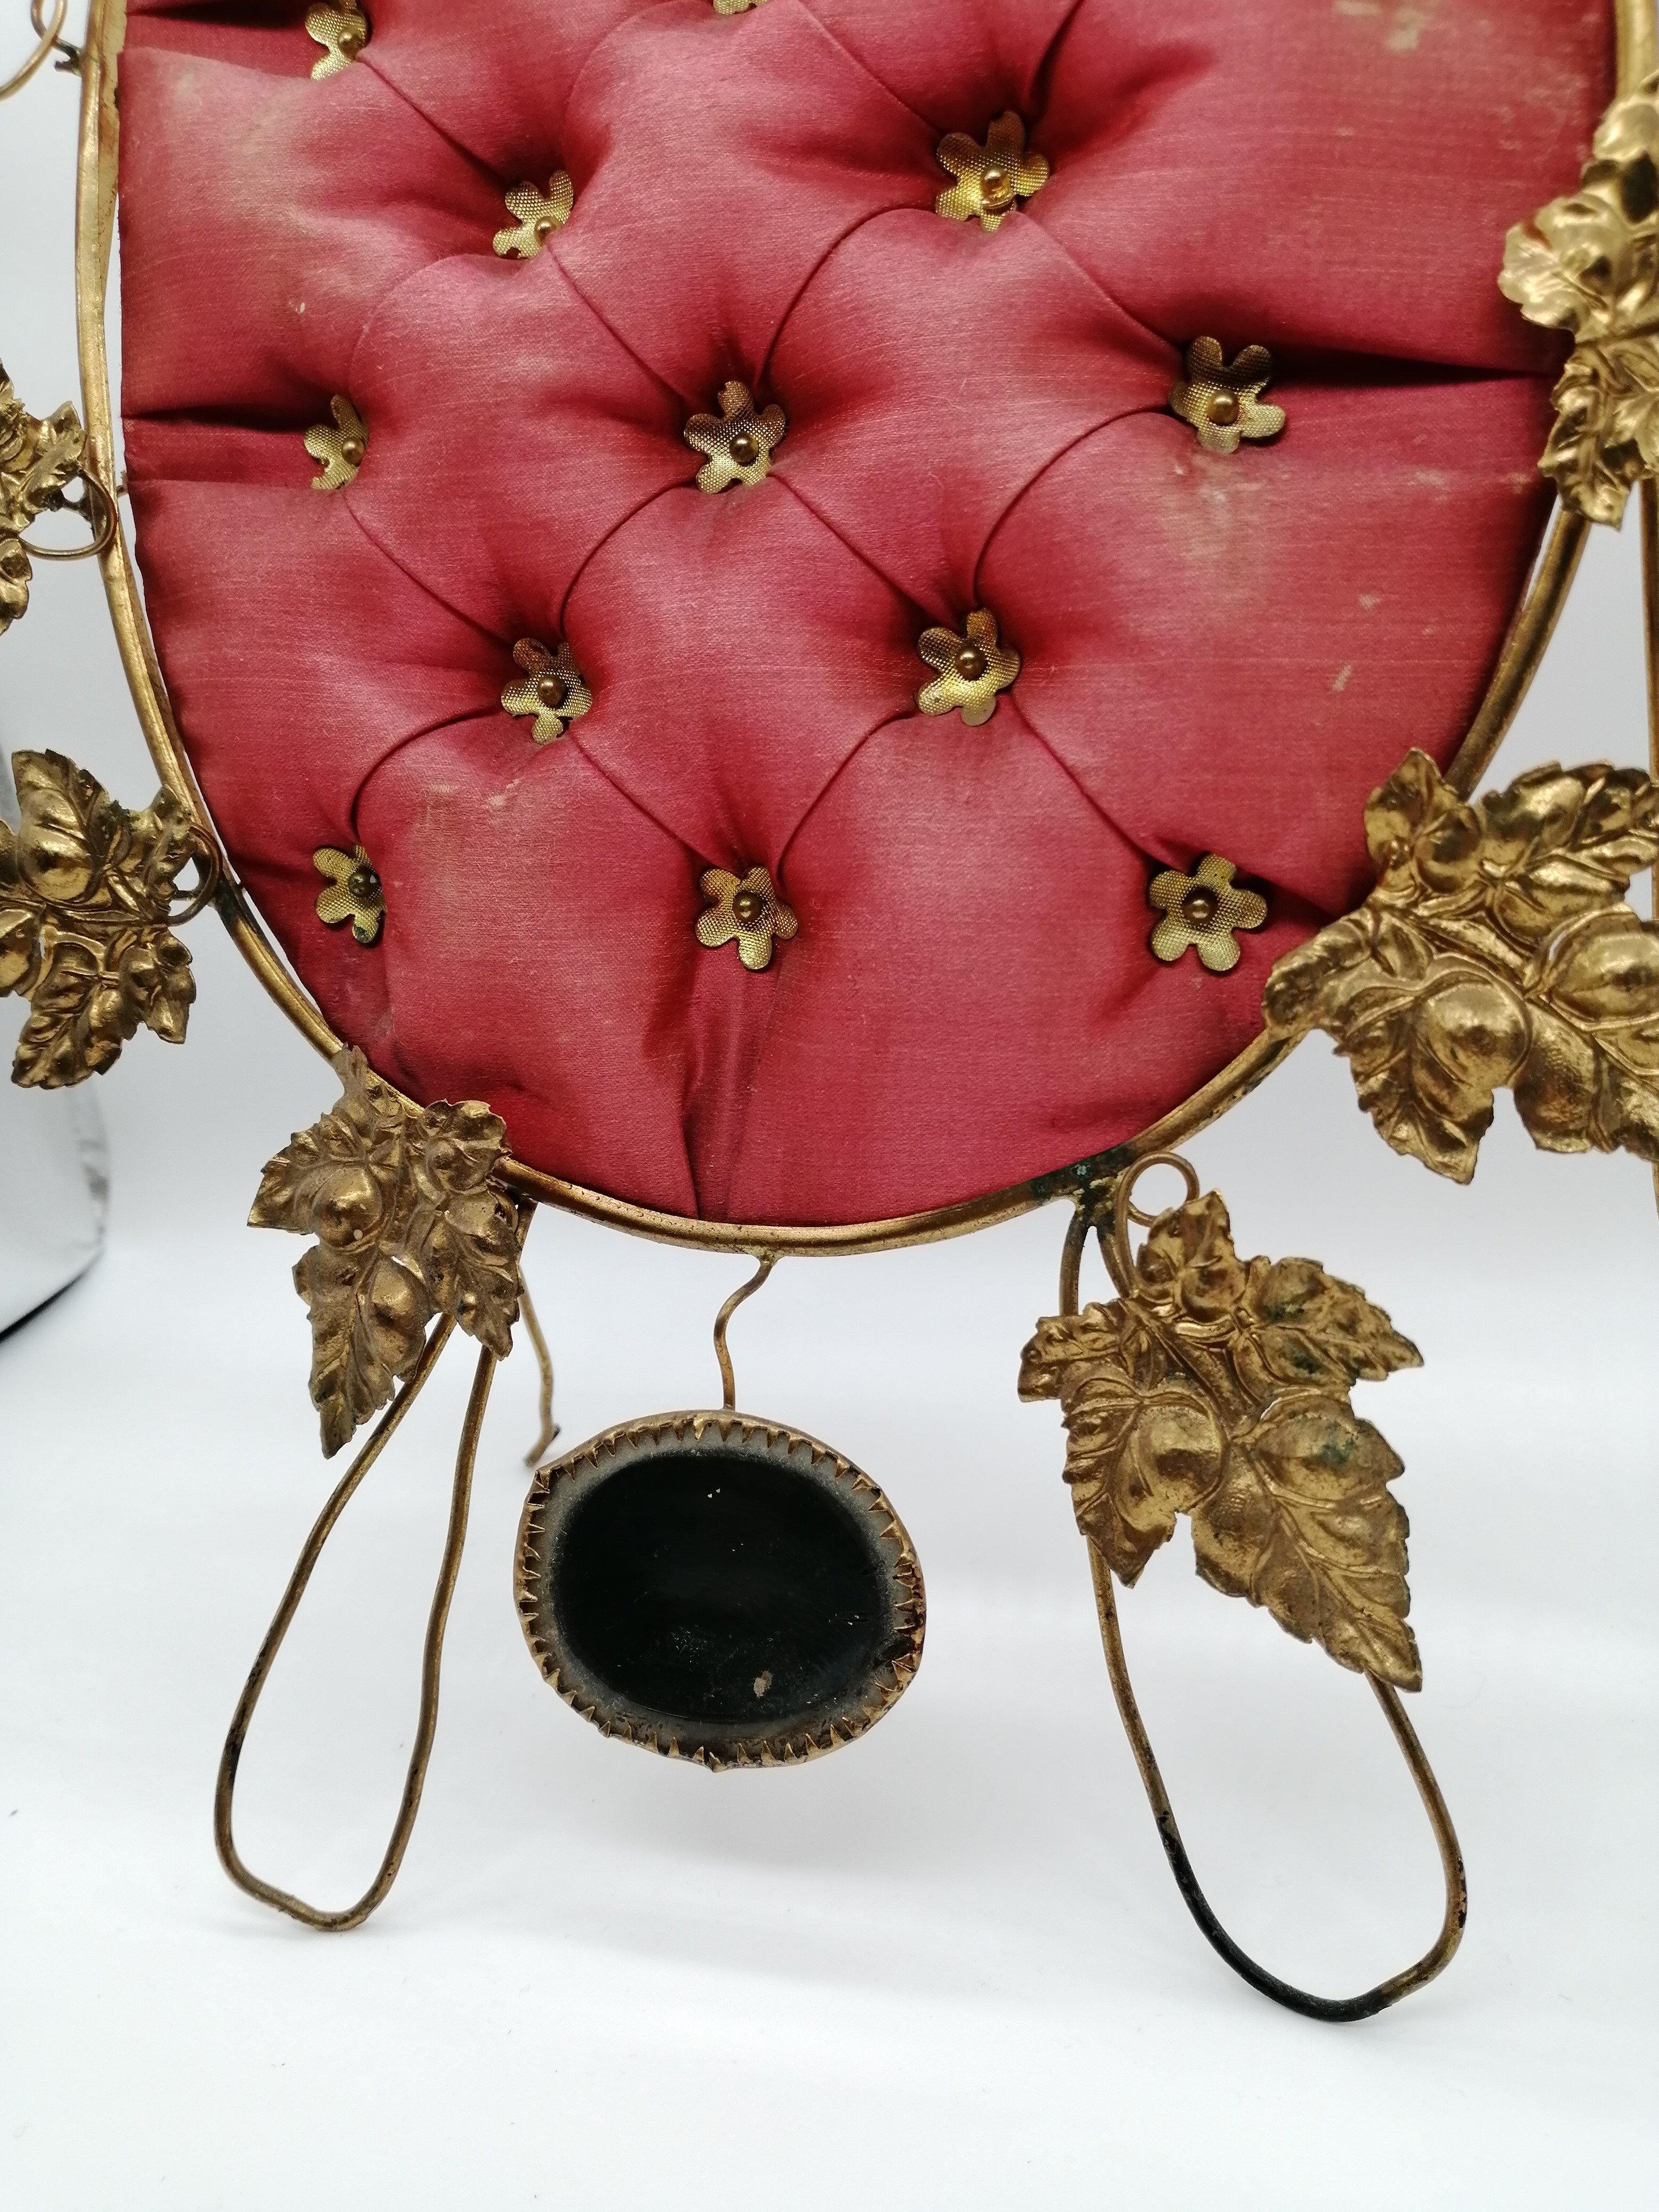 Rouge royal - Brocante Vintage - Au Bonheur Des Dames Toulouse - ABDD - Ancien, Brocante, Curiosité, Objets, Vintage